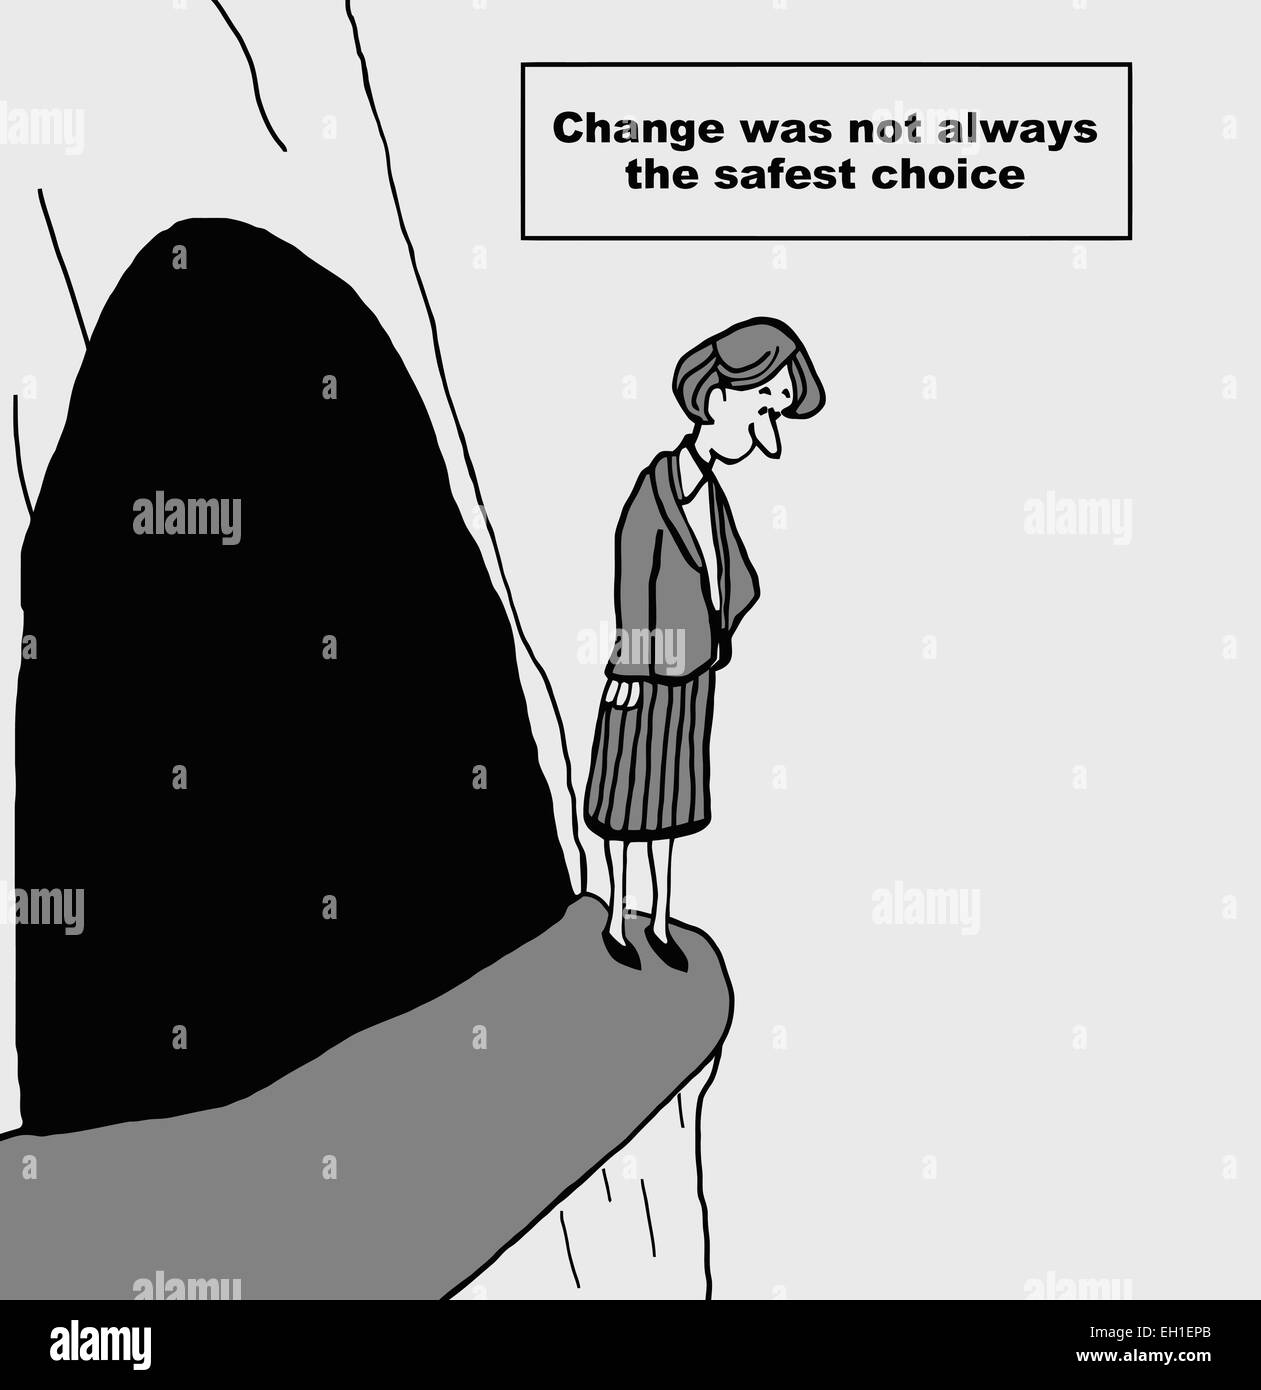 Karikatur von Geschäftsfrau auf Klippe, Änderung war nicht immer die sicherste Wahl. Stock Vektor